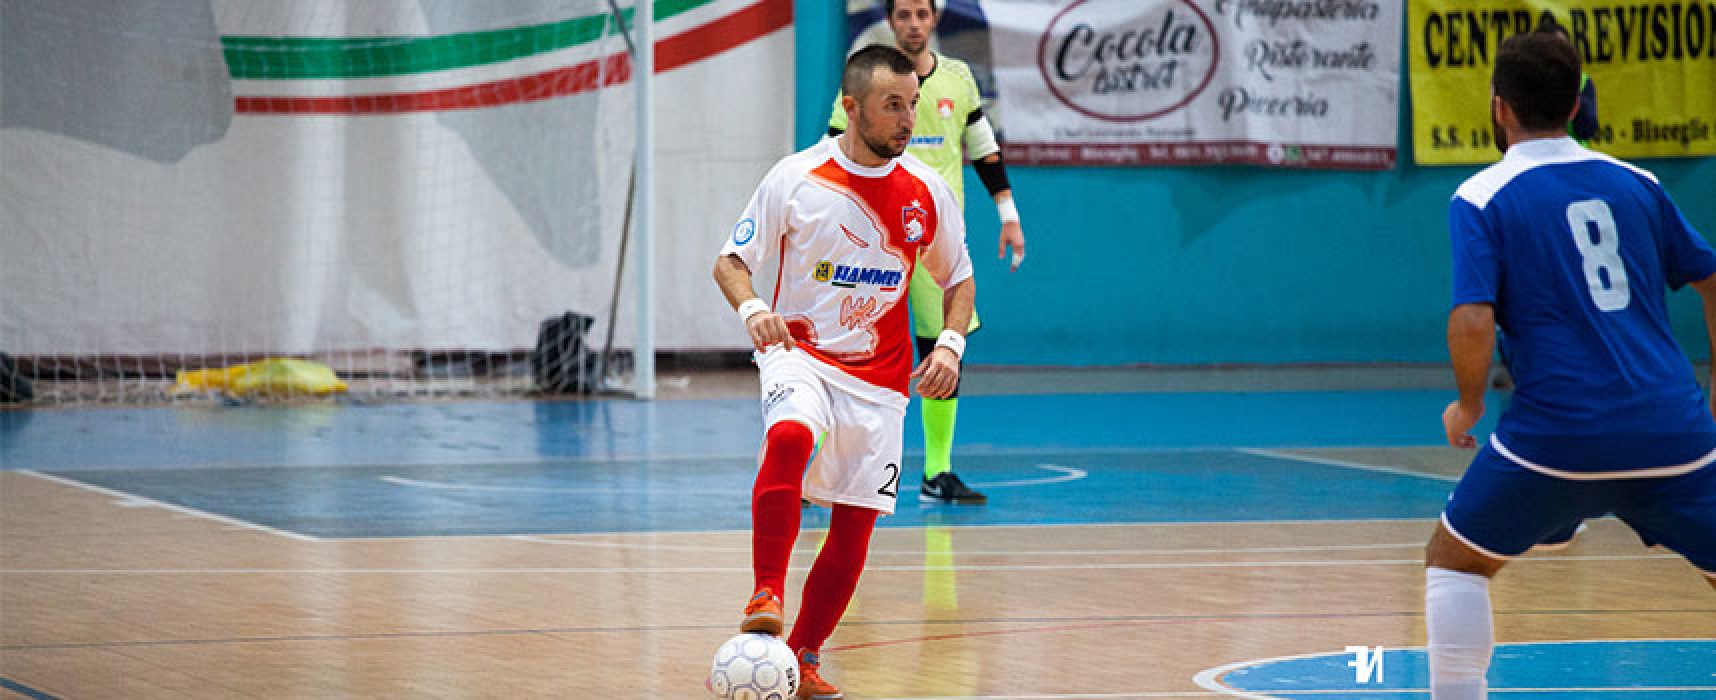 Diaz attende il Futsal Altamura, Acquaviva: “Il nostro campionato inizia sabato”